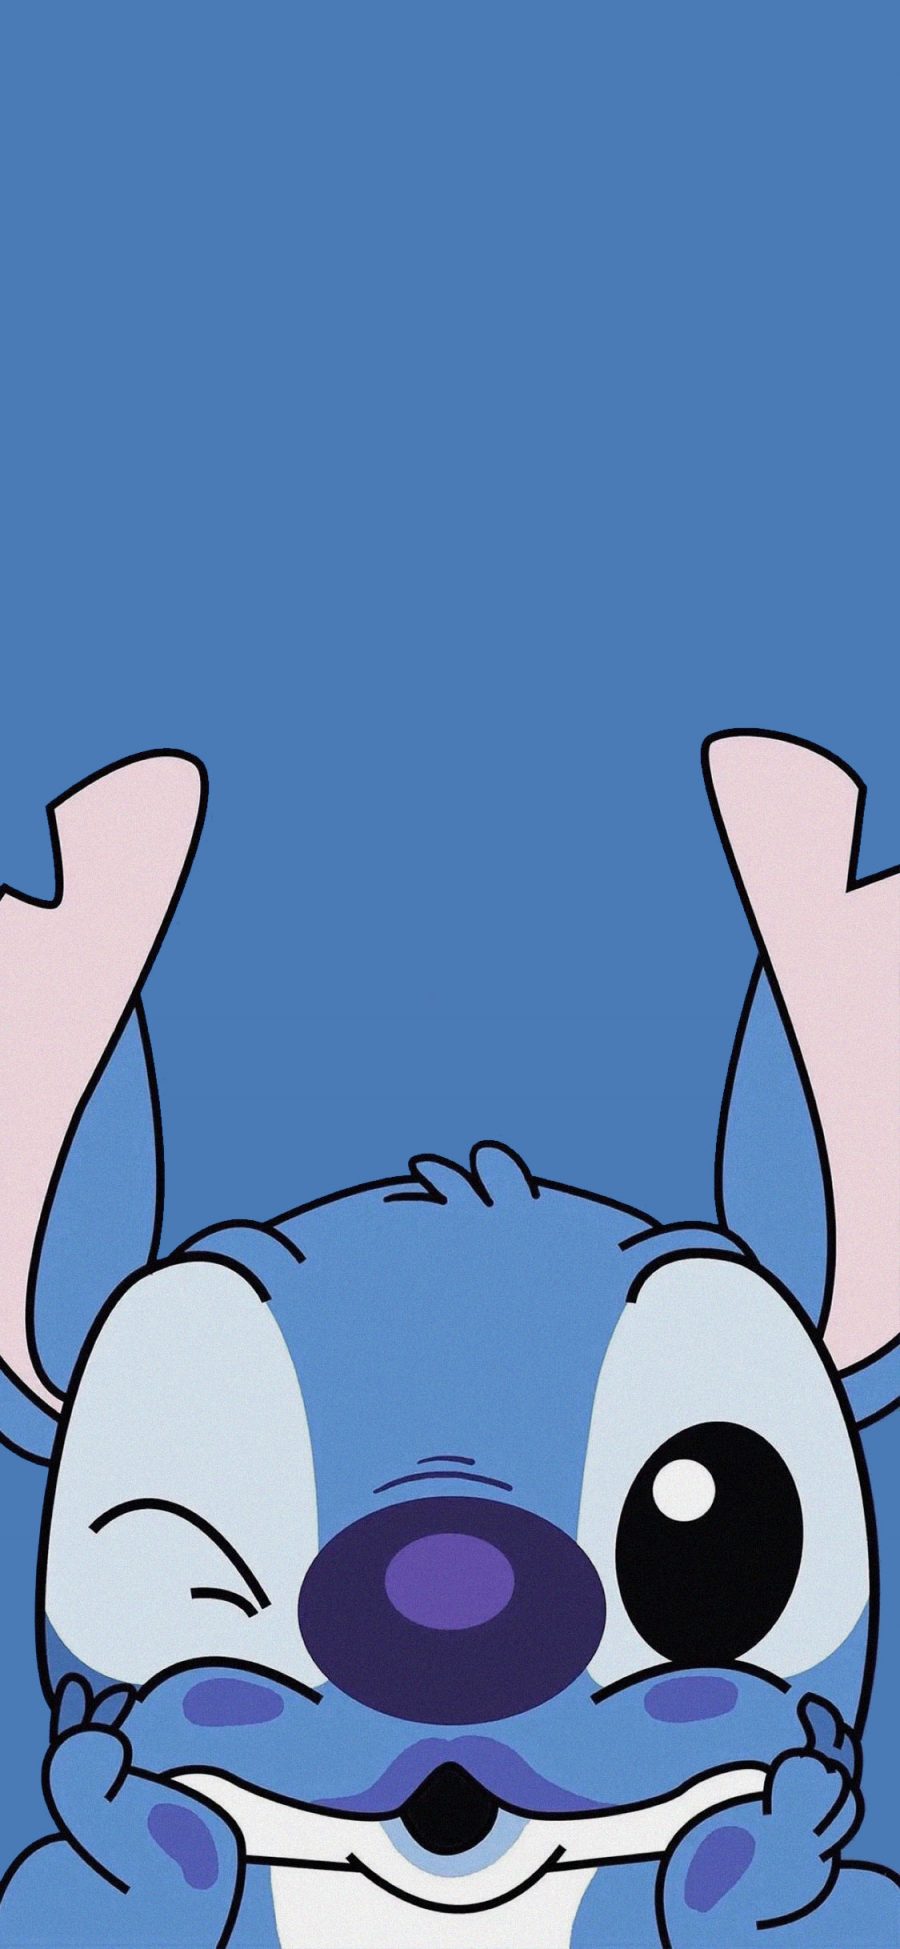 [2436×1125]史迪仔 蓝色 迪士尼 动画 可爱 苹果手机动漫壁纸图片